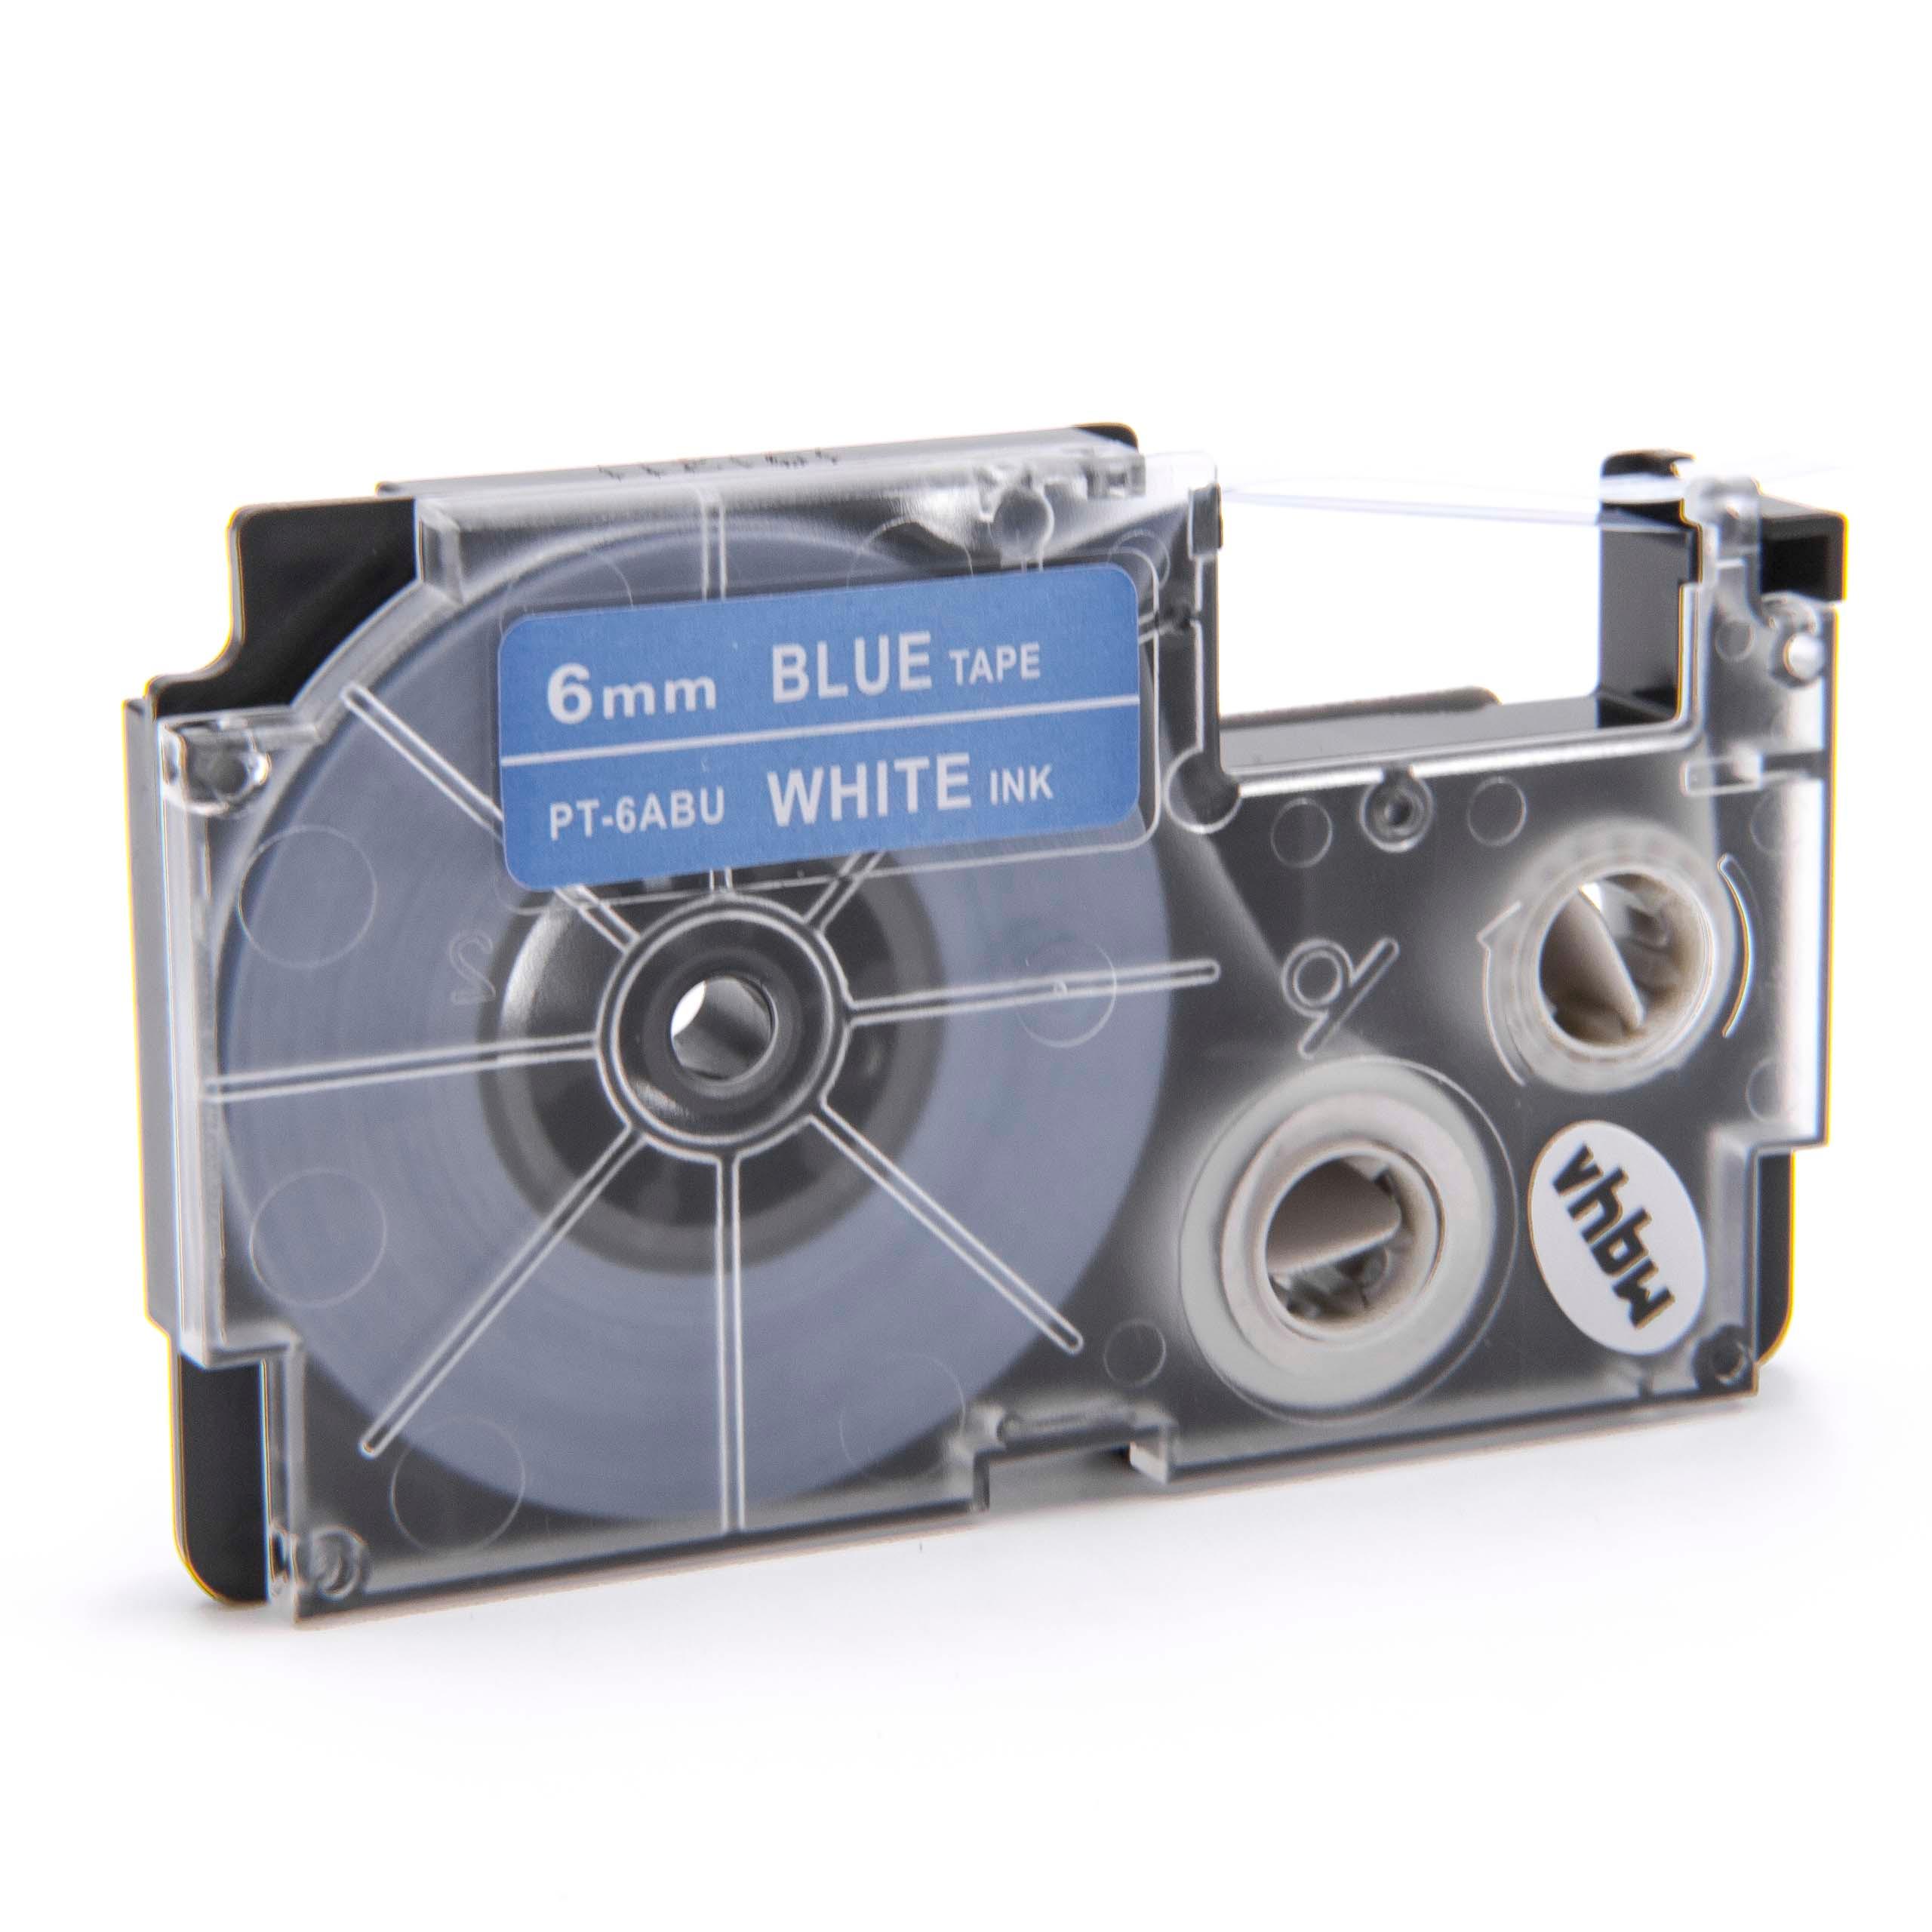 Cassetta nastro sostituisce Casio XR-6ABU, XR-6ABU1 per etichettatrice Casio 6mm bianco su blu